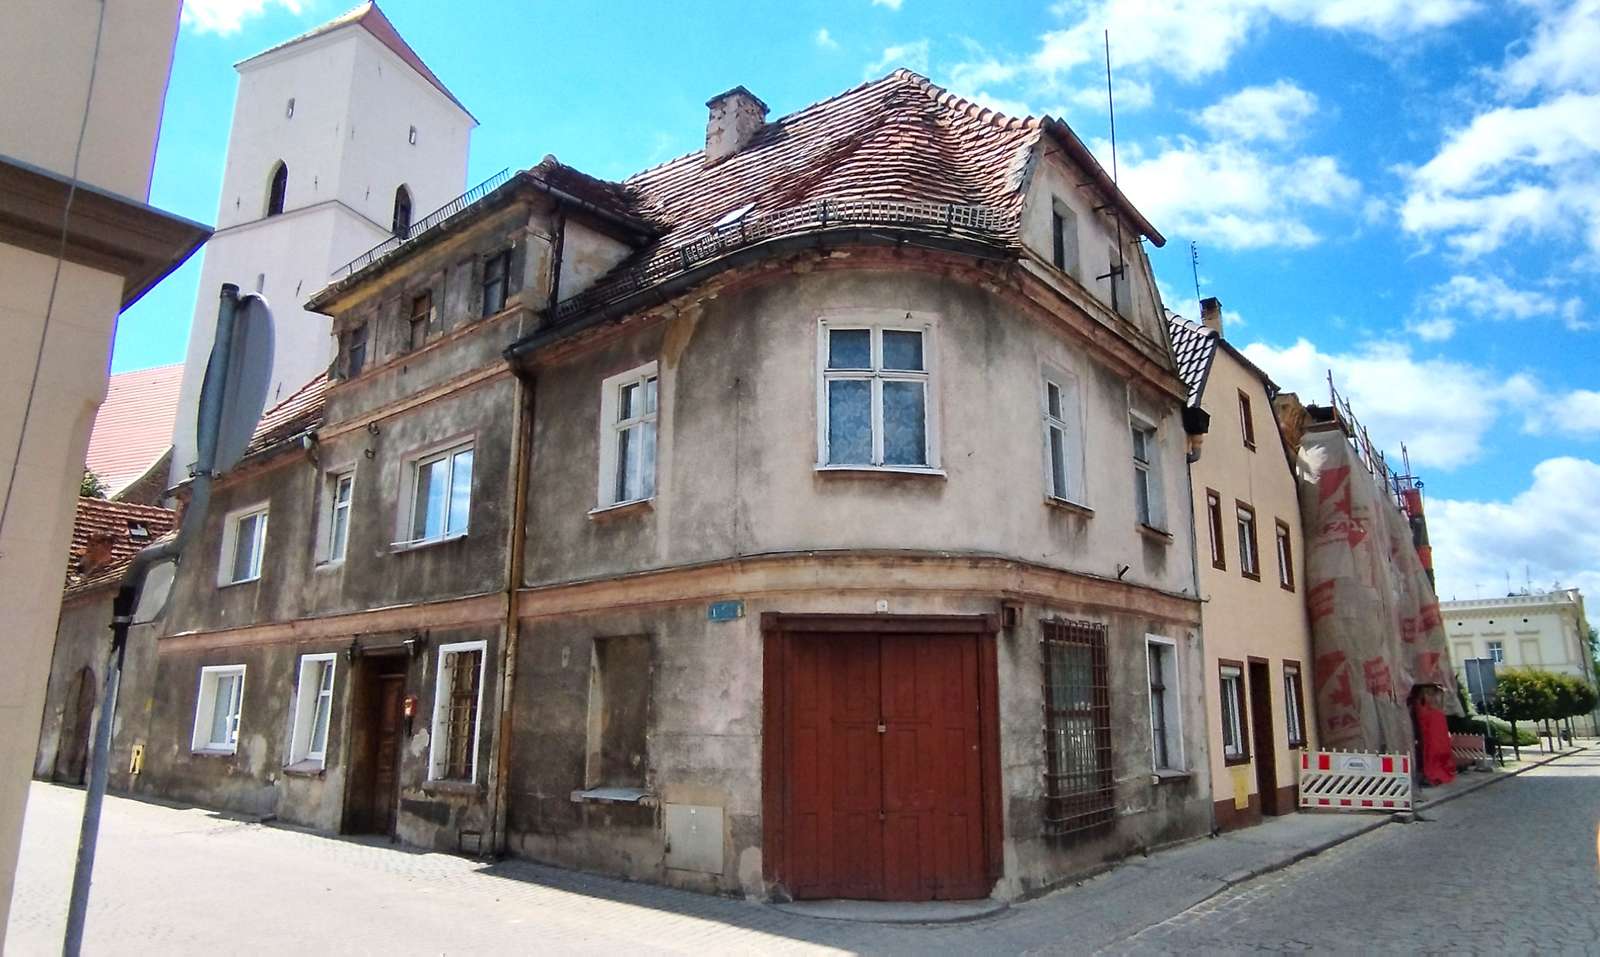 Linda casa antiga aguardando revitalização (Polônia) puzzle online